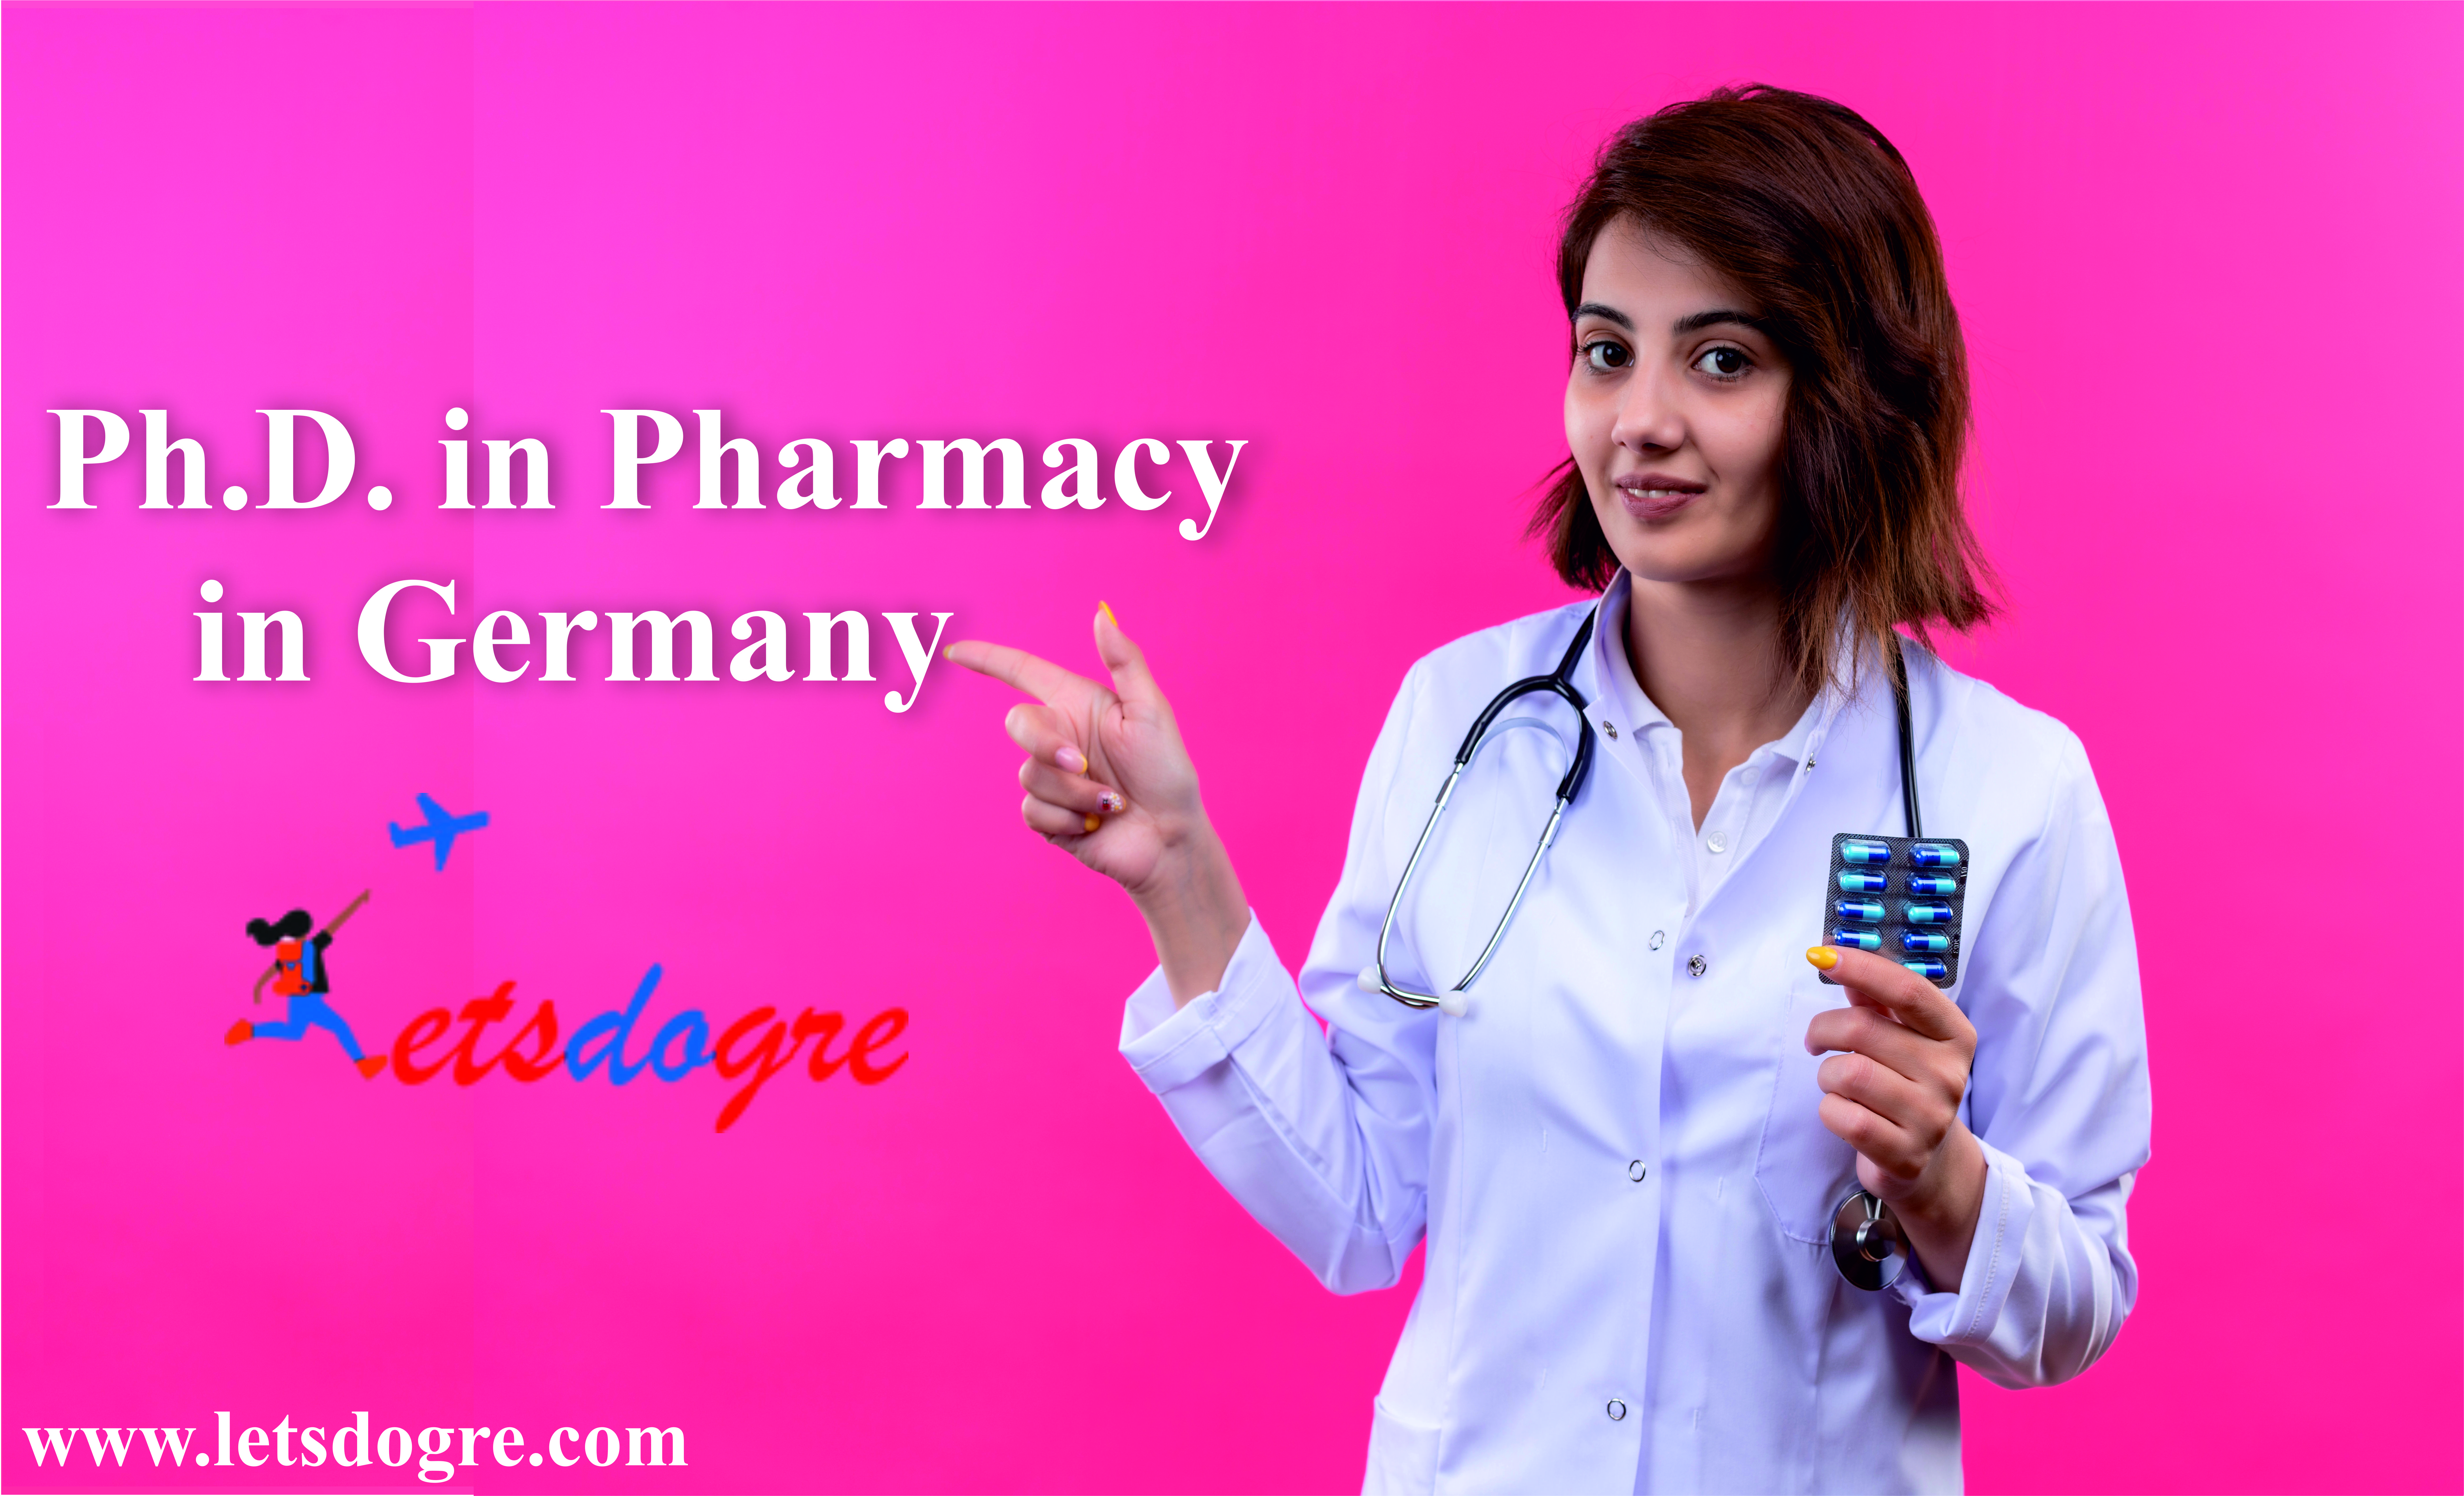 Ph.D. Pharmacy in Germany